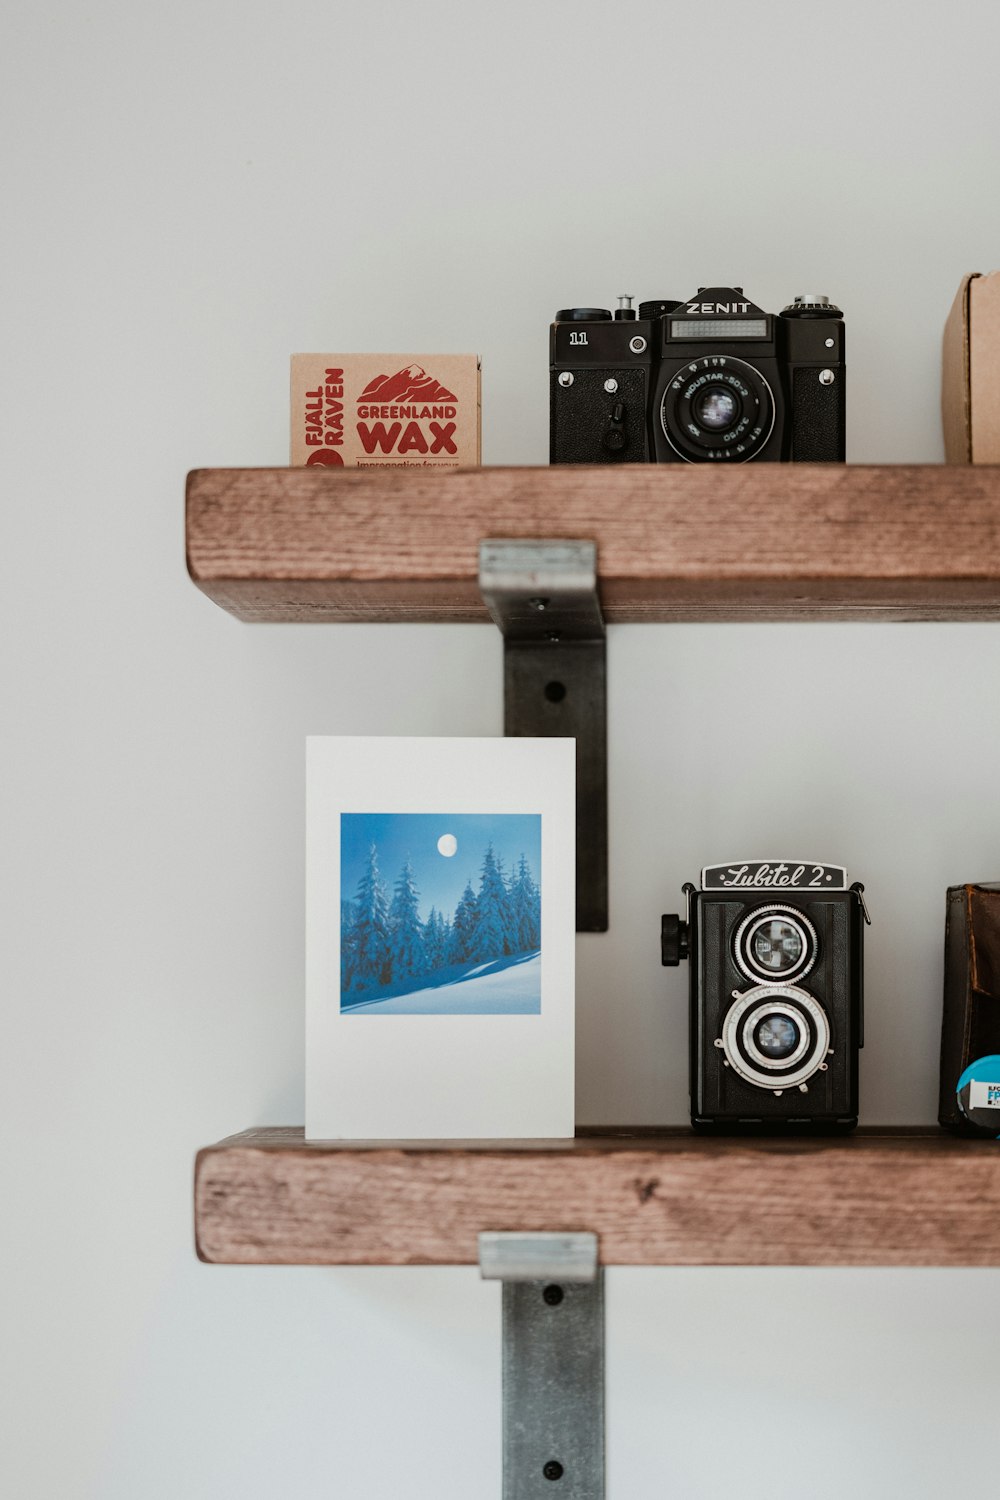 Fotocamera DSLR nera e argento su mensola a muro in legno bianco